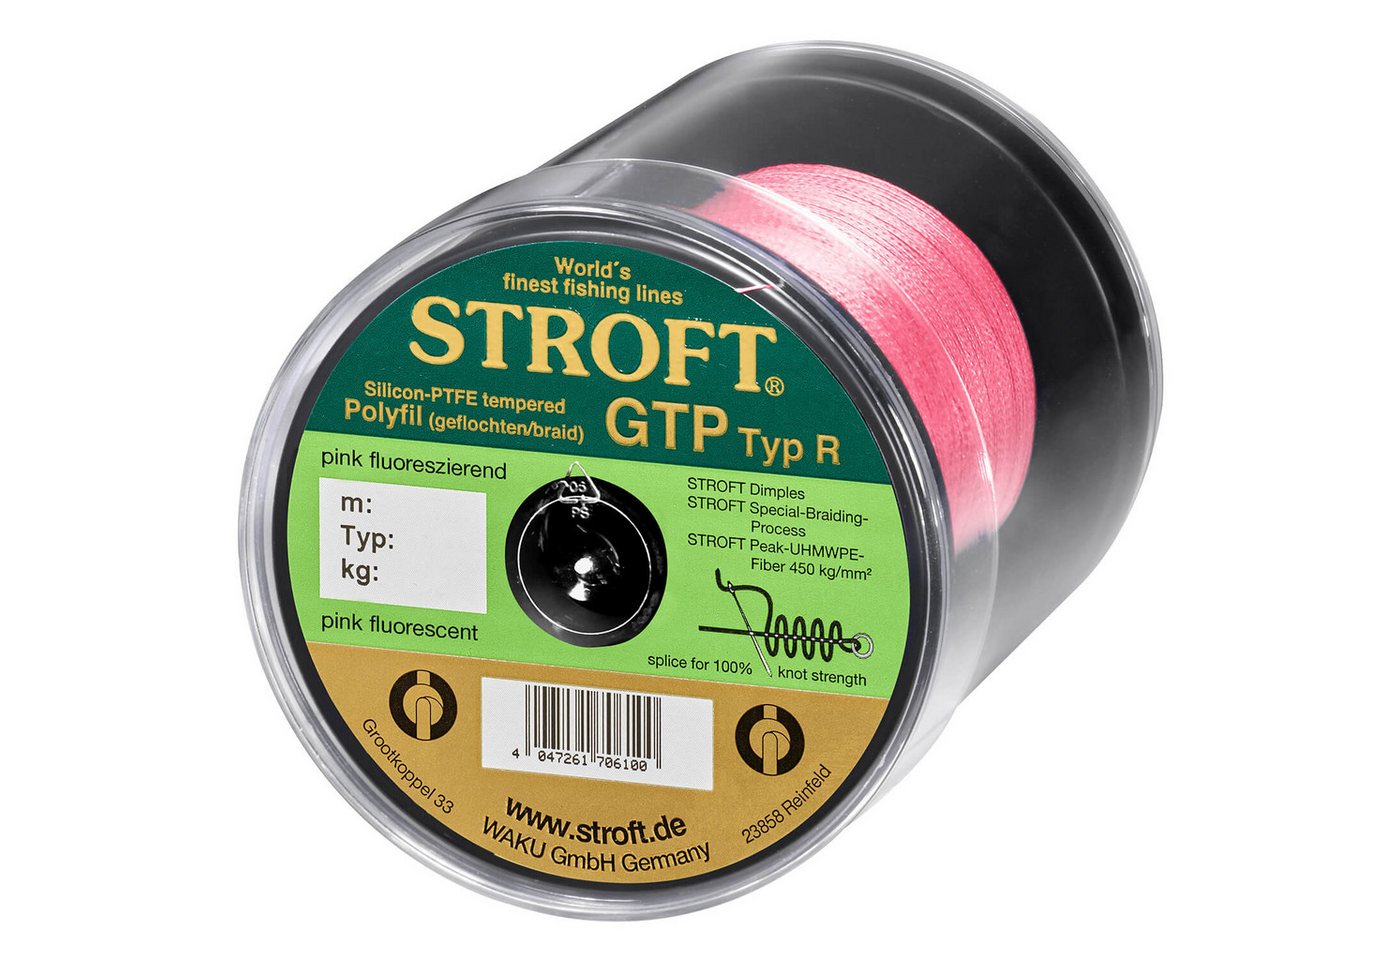 Stroft Angelschnur STROFT GTP Typ R Geflochtene Angelschnur 600m pink fluor, 600 m Länge, 0.20 mm Fadendurchmesser, (1-St), 7kg Tragkraft von Stroft